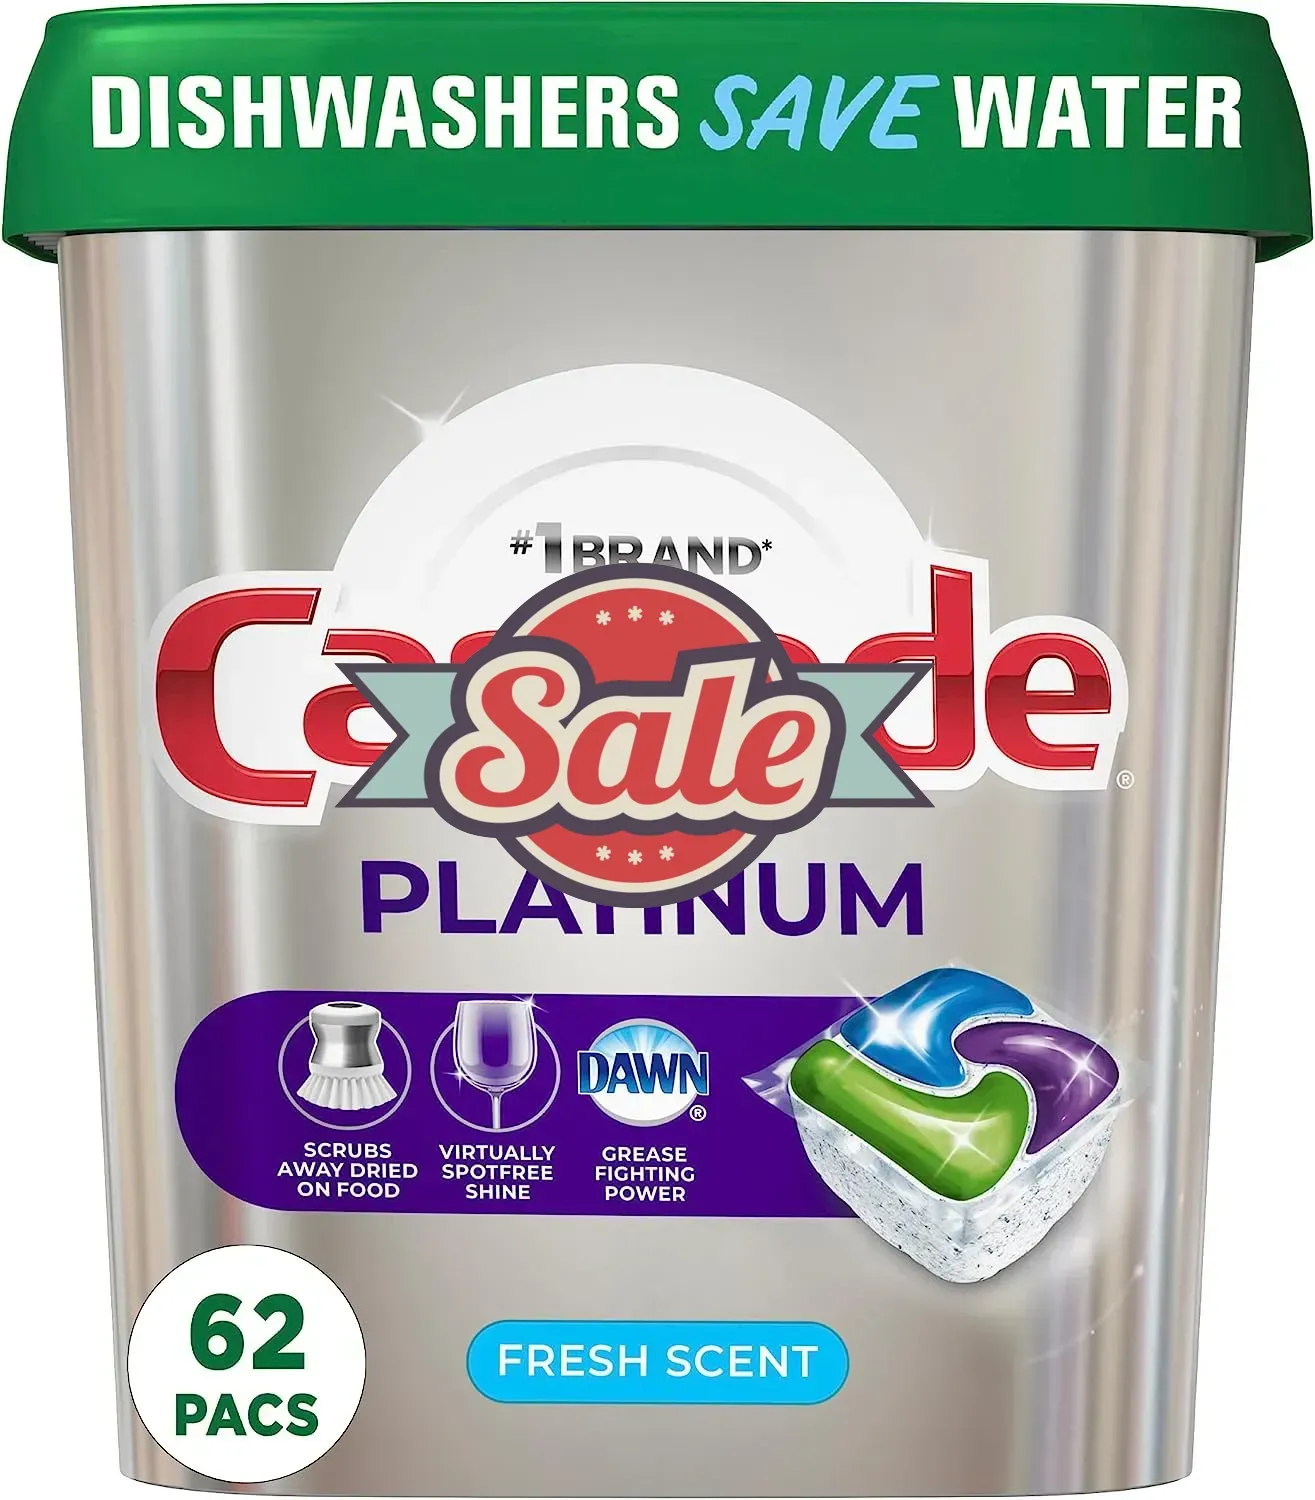 Platinum Dishwasher Pods, Dishwasher Detergent, Dishwasher Pod, Dishwasher Soap Pods, Actionpacs with Dishwasher Cleaner and Deodorizer Action, Fresh, 62 Count of Dish Detegent Pods